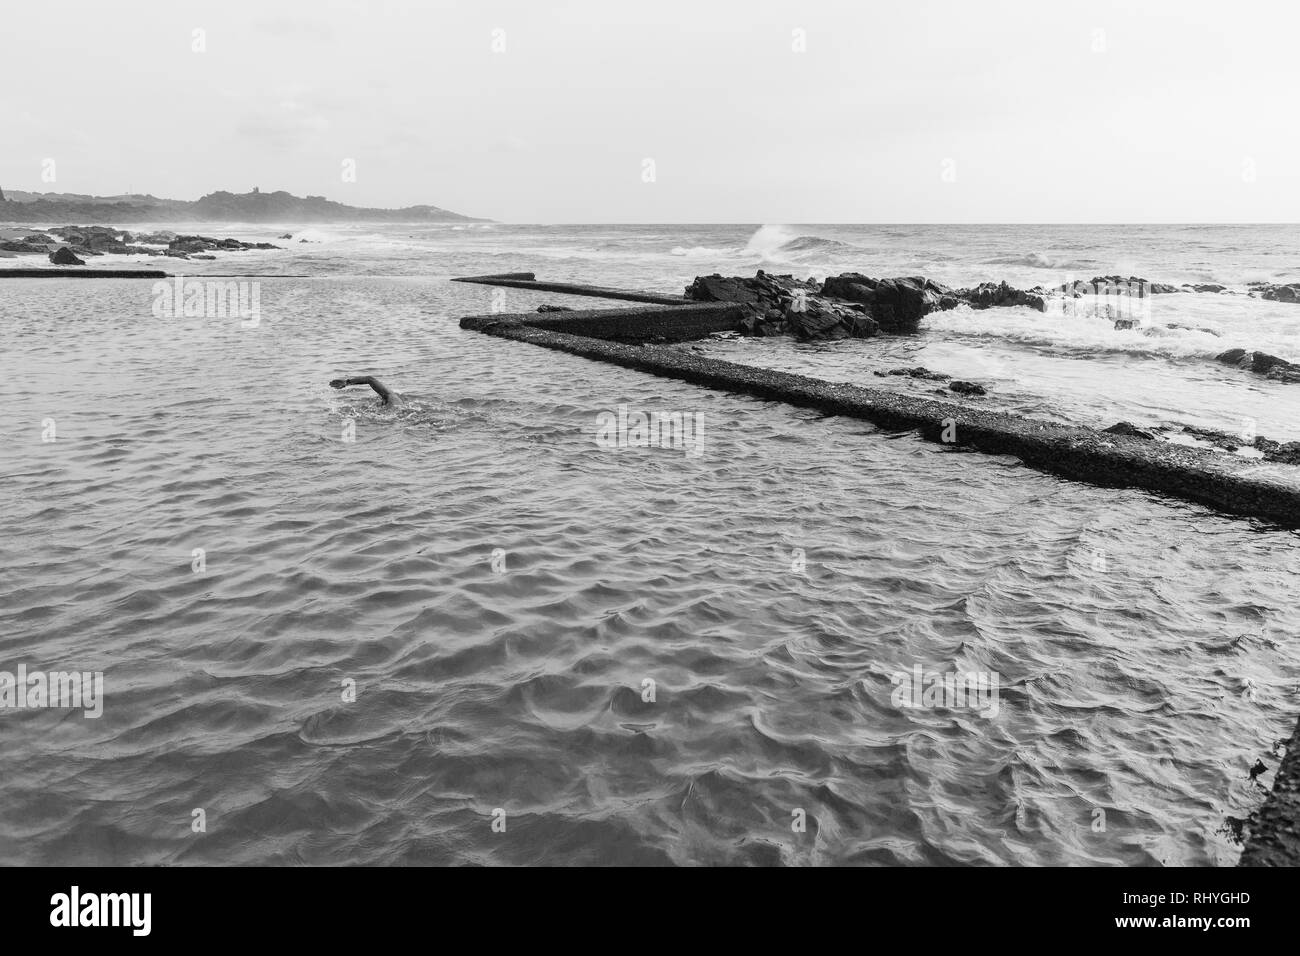 Maschio dedicato nuoto fitness esercizio in beach ocean pool di marea ventoso contrastato condizioni in foto in bianco e nero. Foto Stock